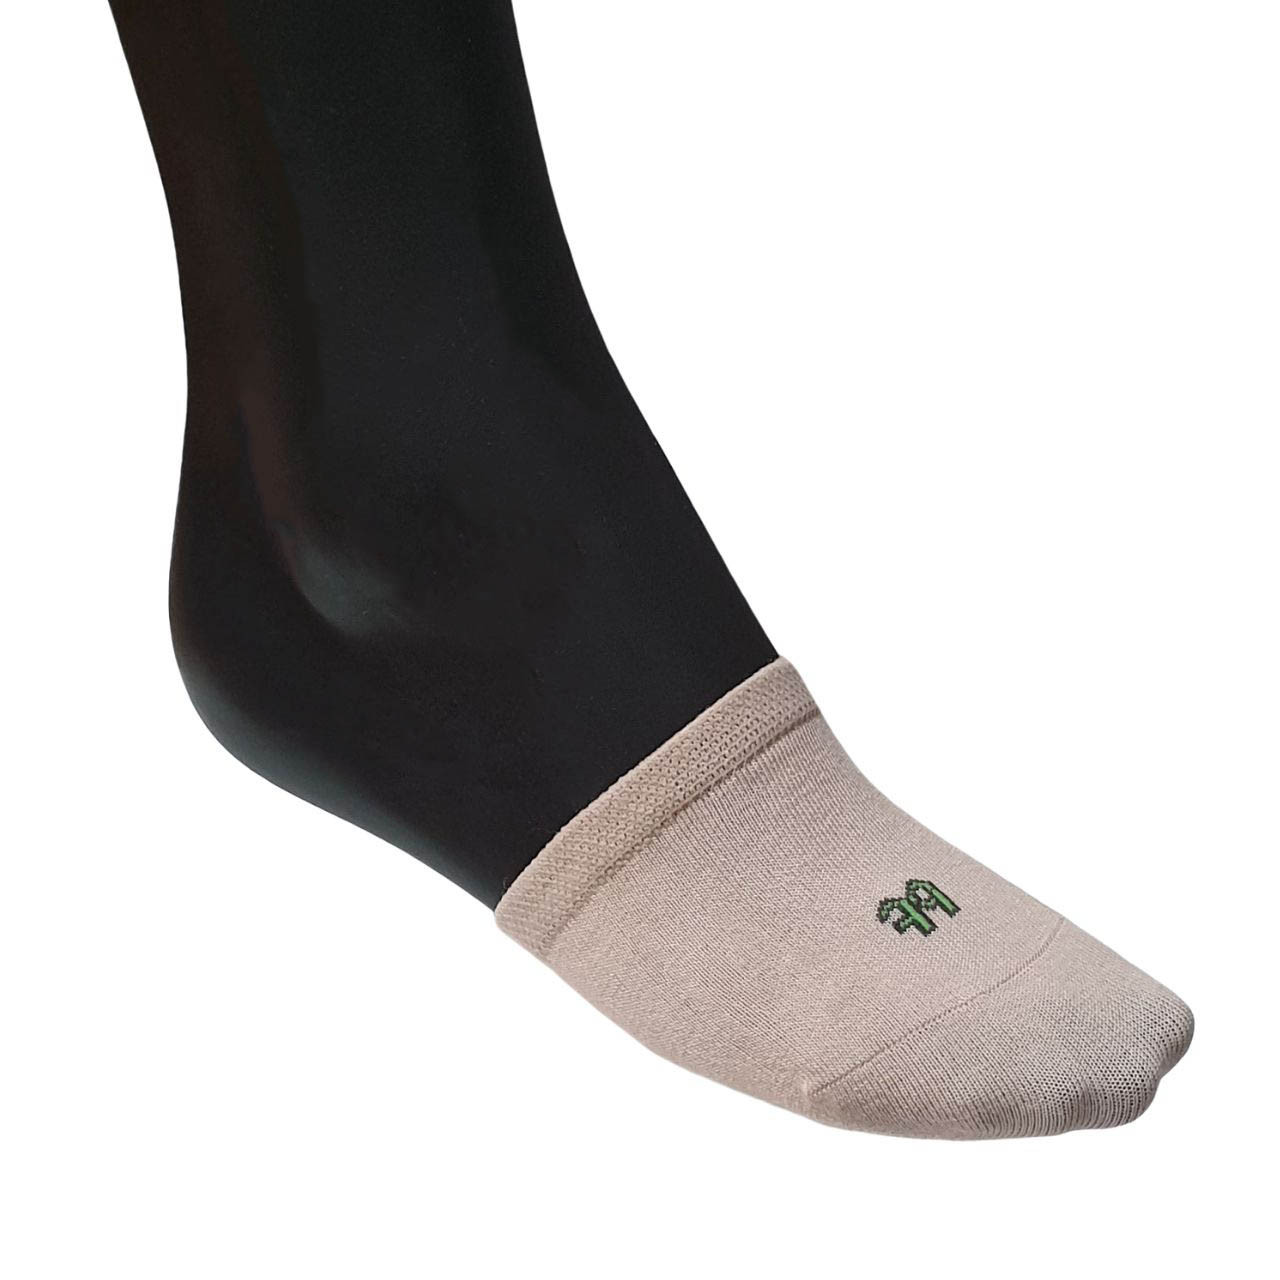 The Bamboo Toe Cap Sock